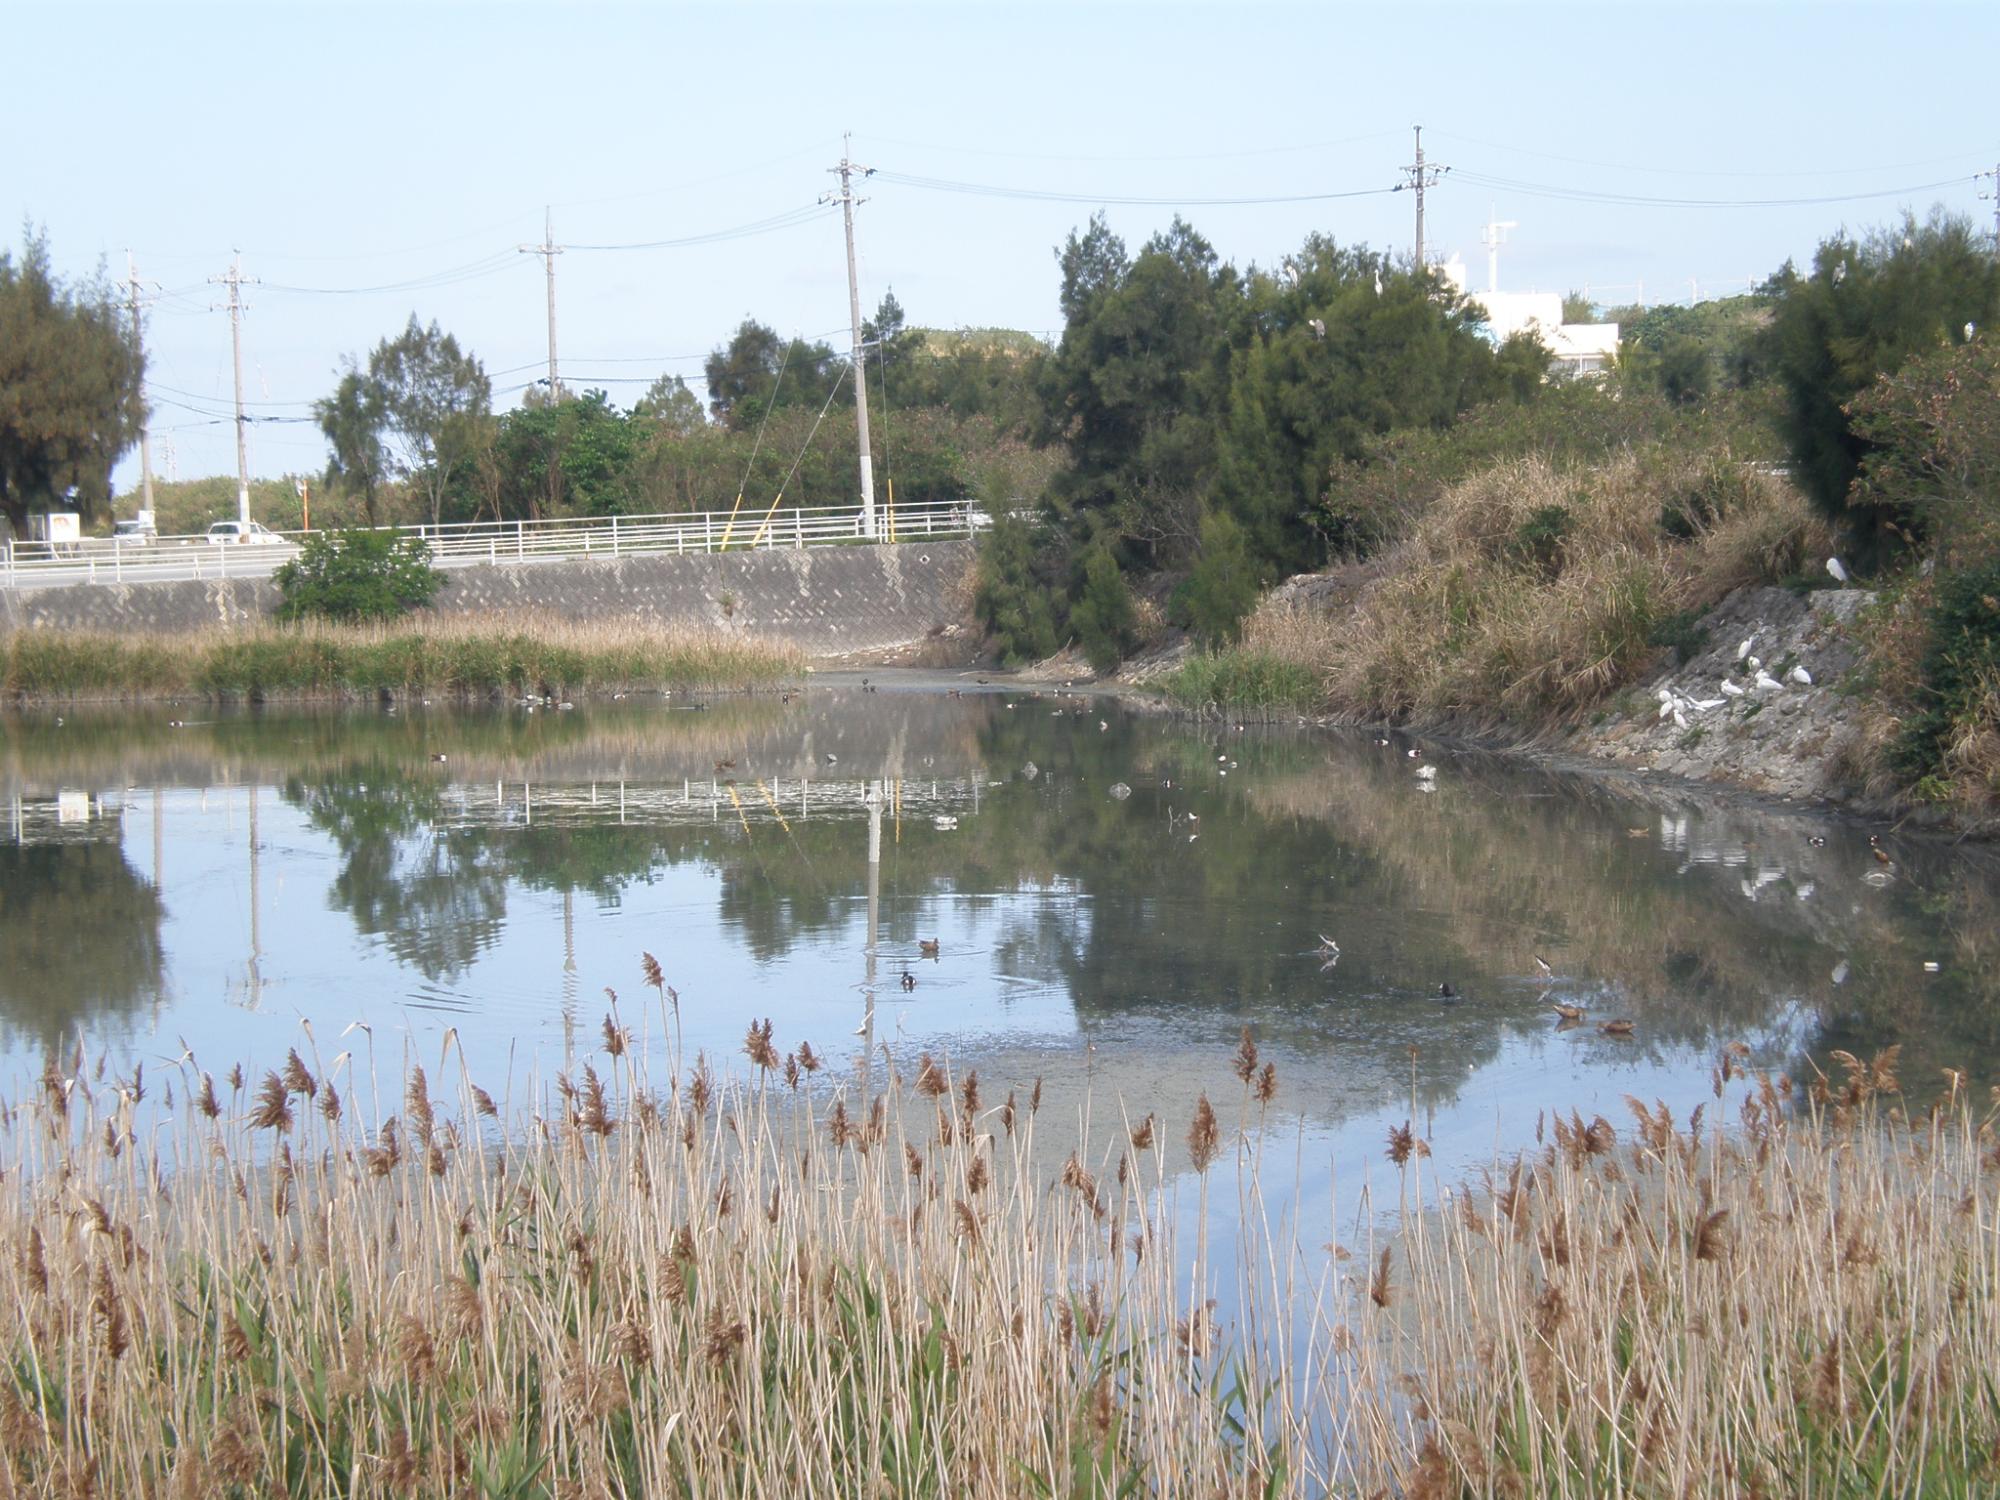 第一遊水地、通称「三角池」にいろいろな種類の水鳥が集まっている様子を撮影した写真